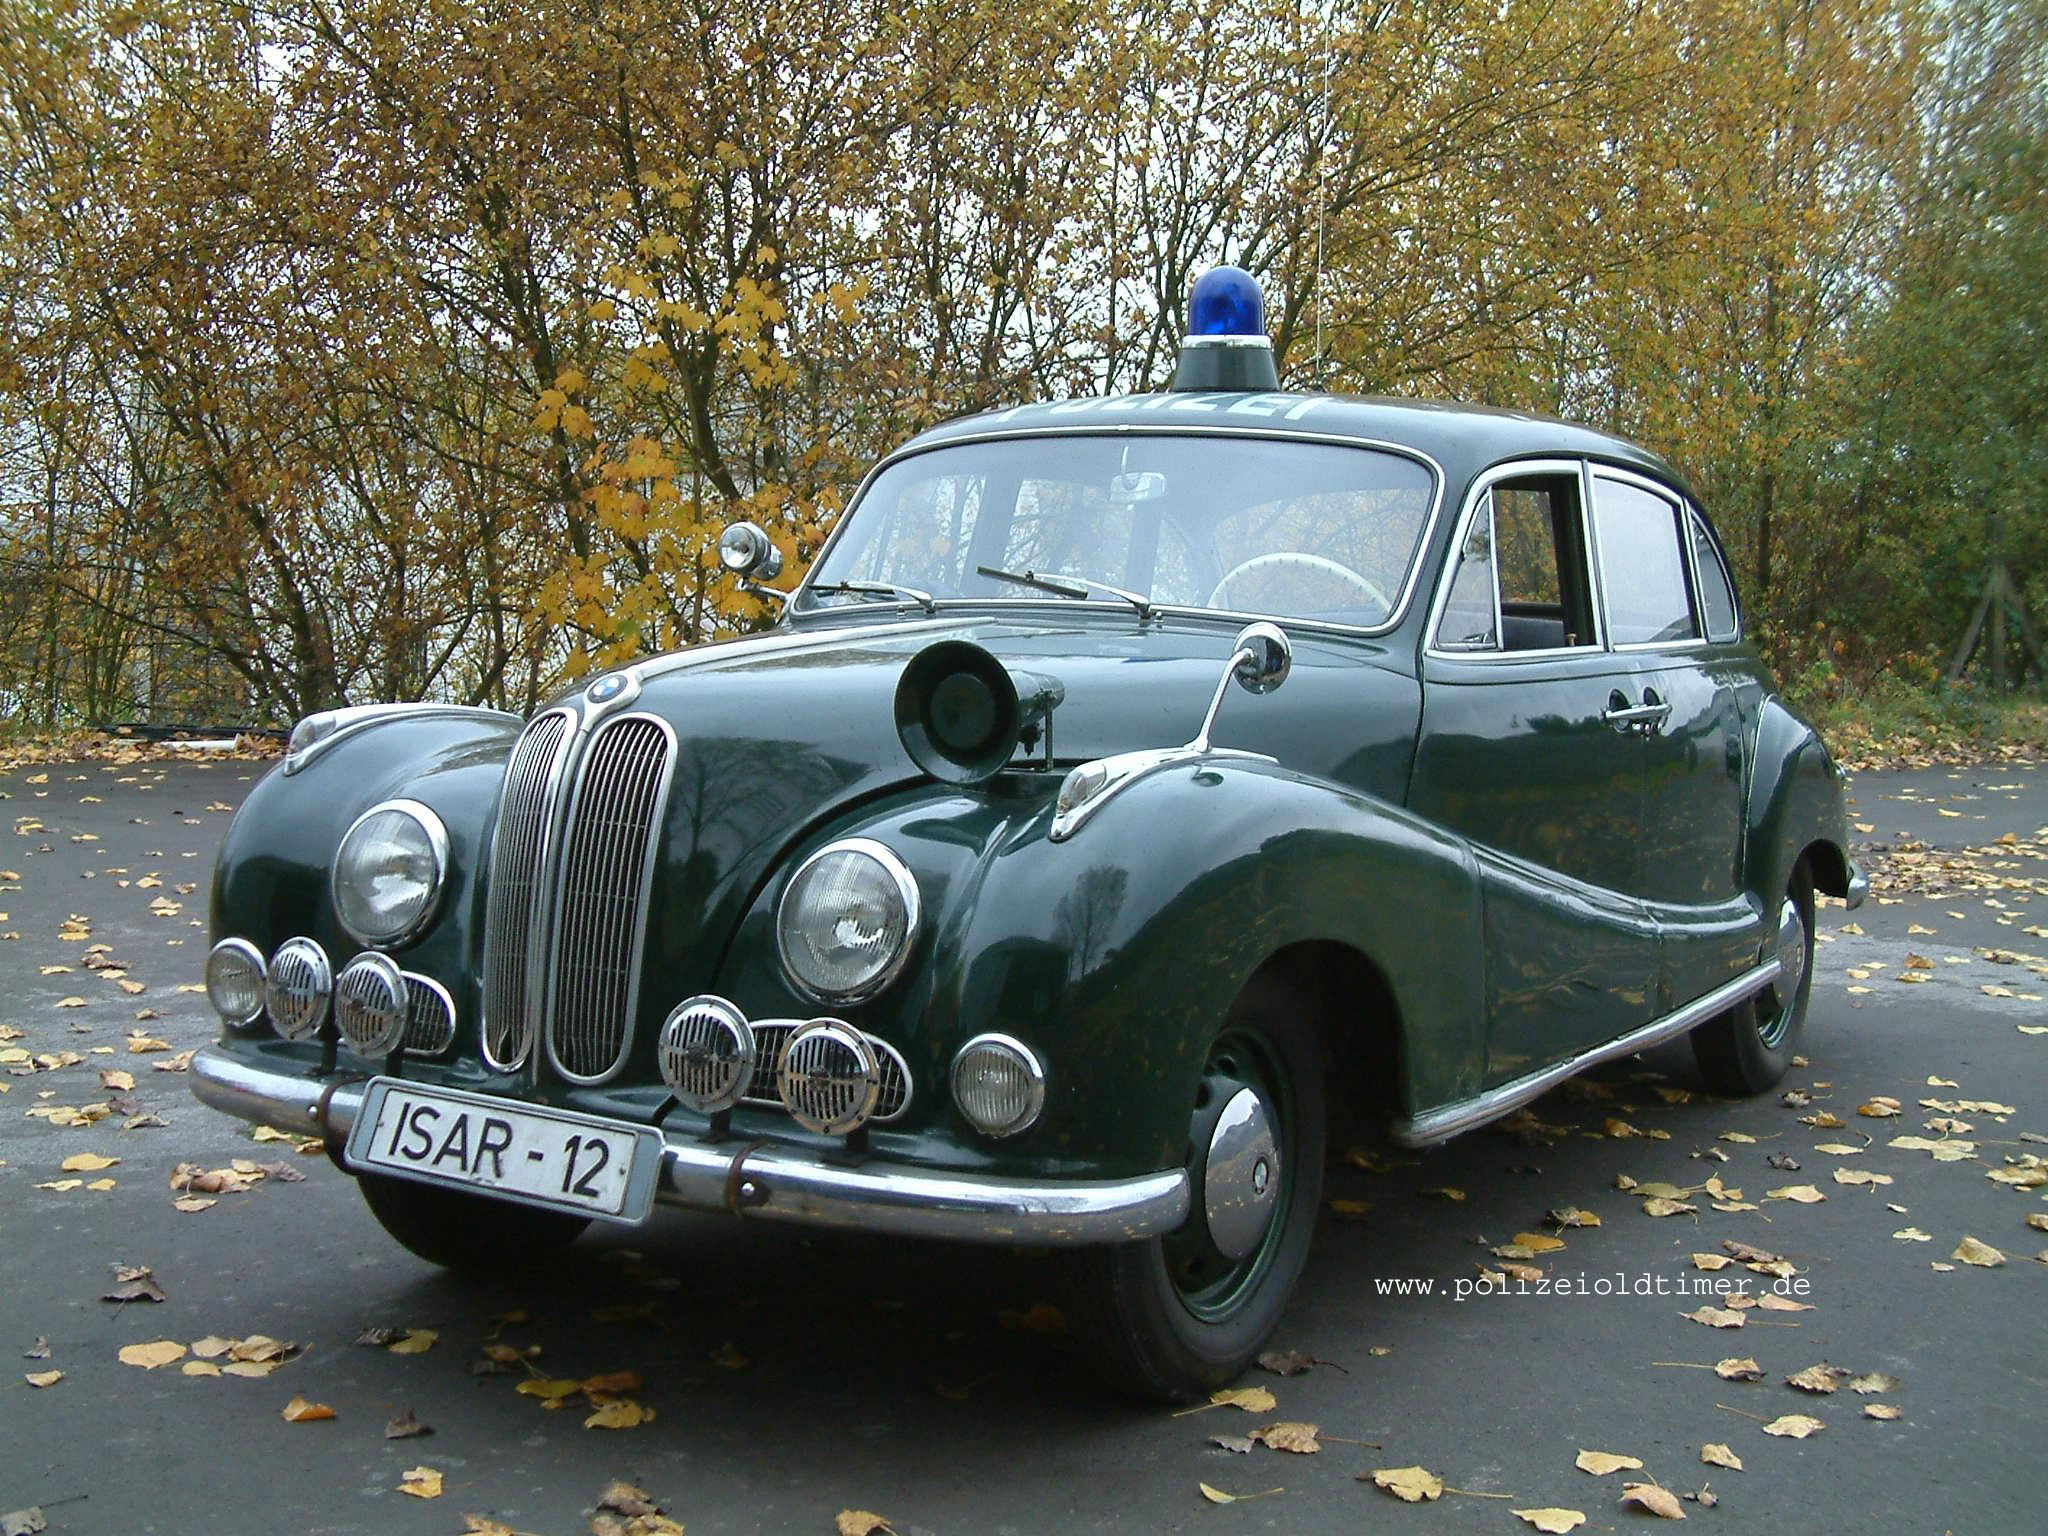 Die Polizei-BMW 501 - Isar 12 aus dem 1. Deutschen Polizeioldtimer Museum Marburg